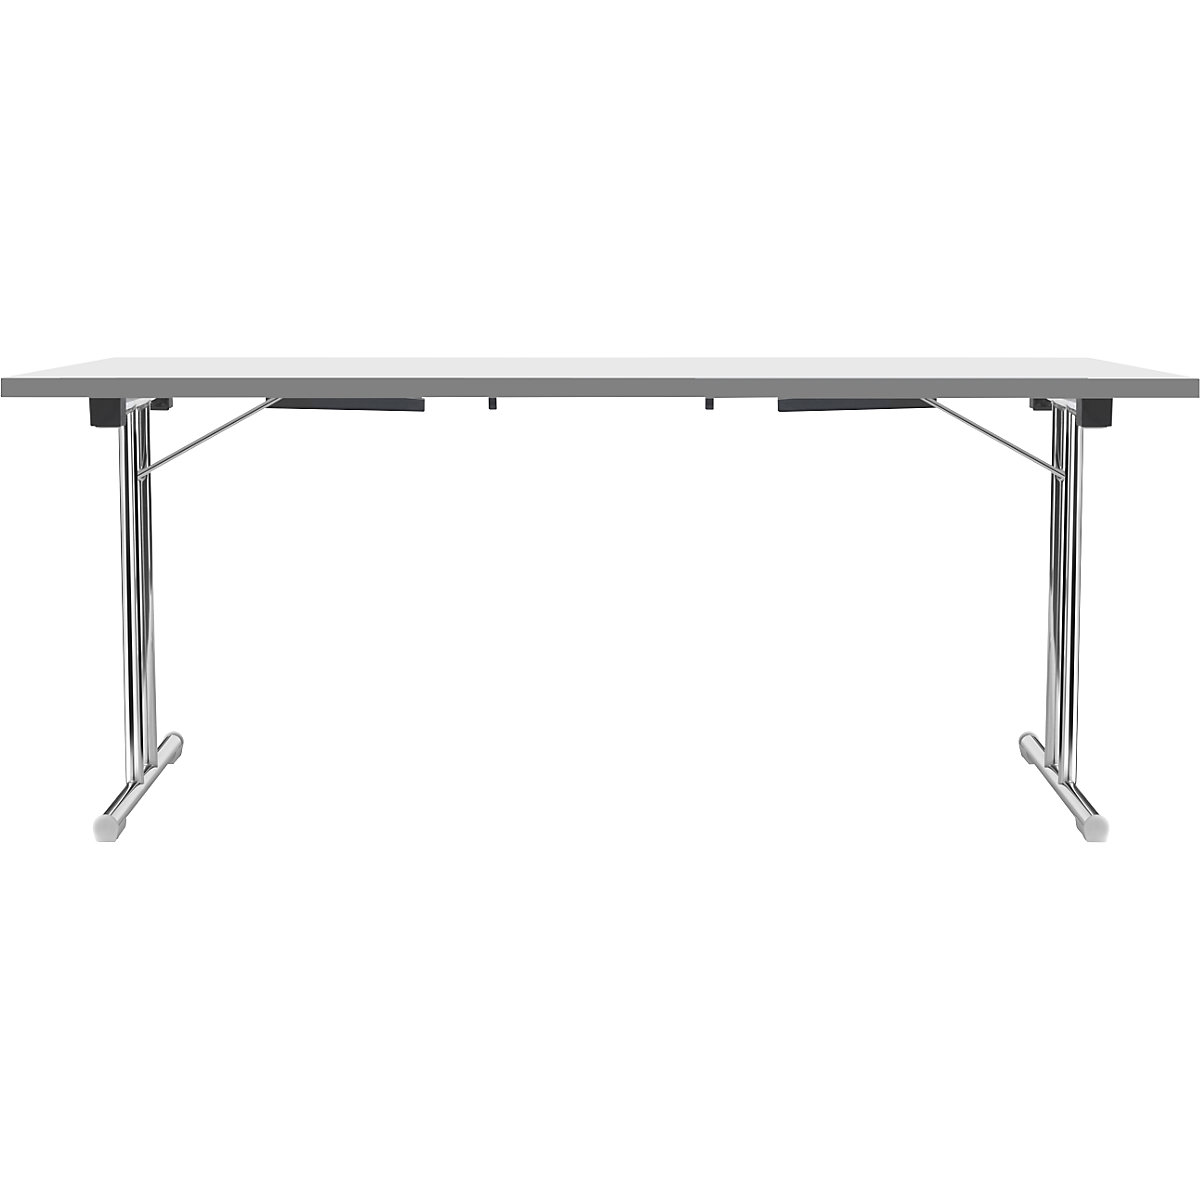 Zložljiva miza z dvojnim podnožjem v obliki črke T, ogrodje iz okrogle jeklene cevi, kromirano, bela/antracitna, ŠxG 1800 x 800 mm-10